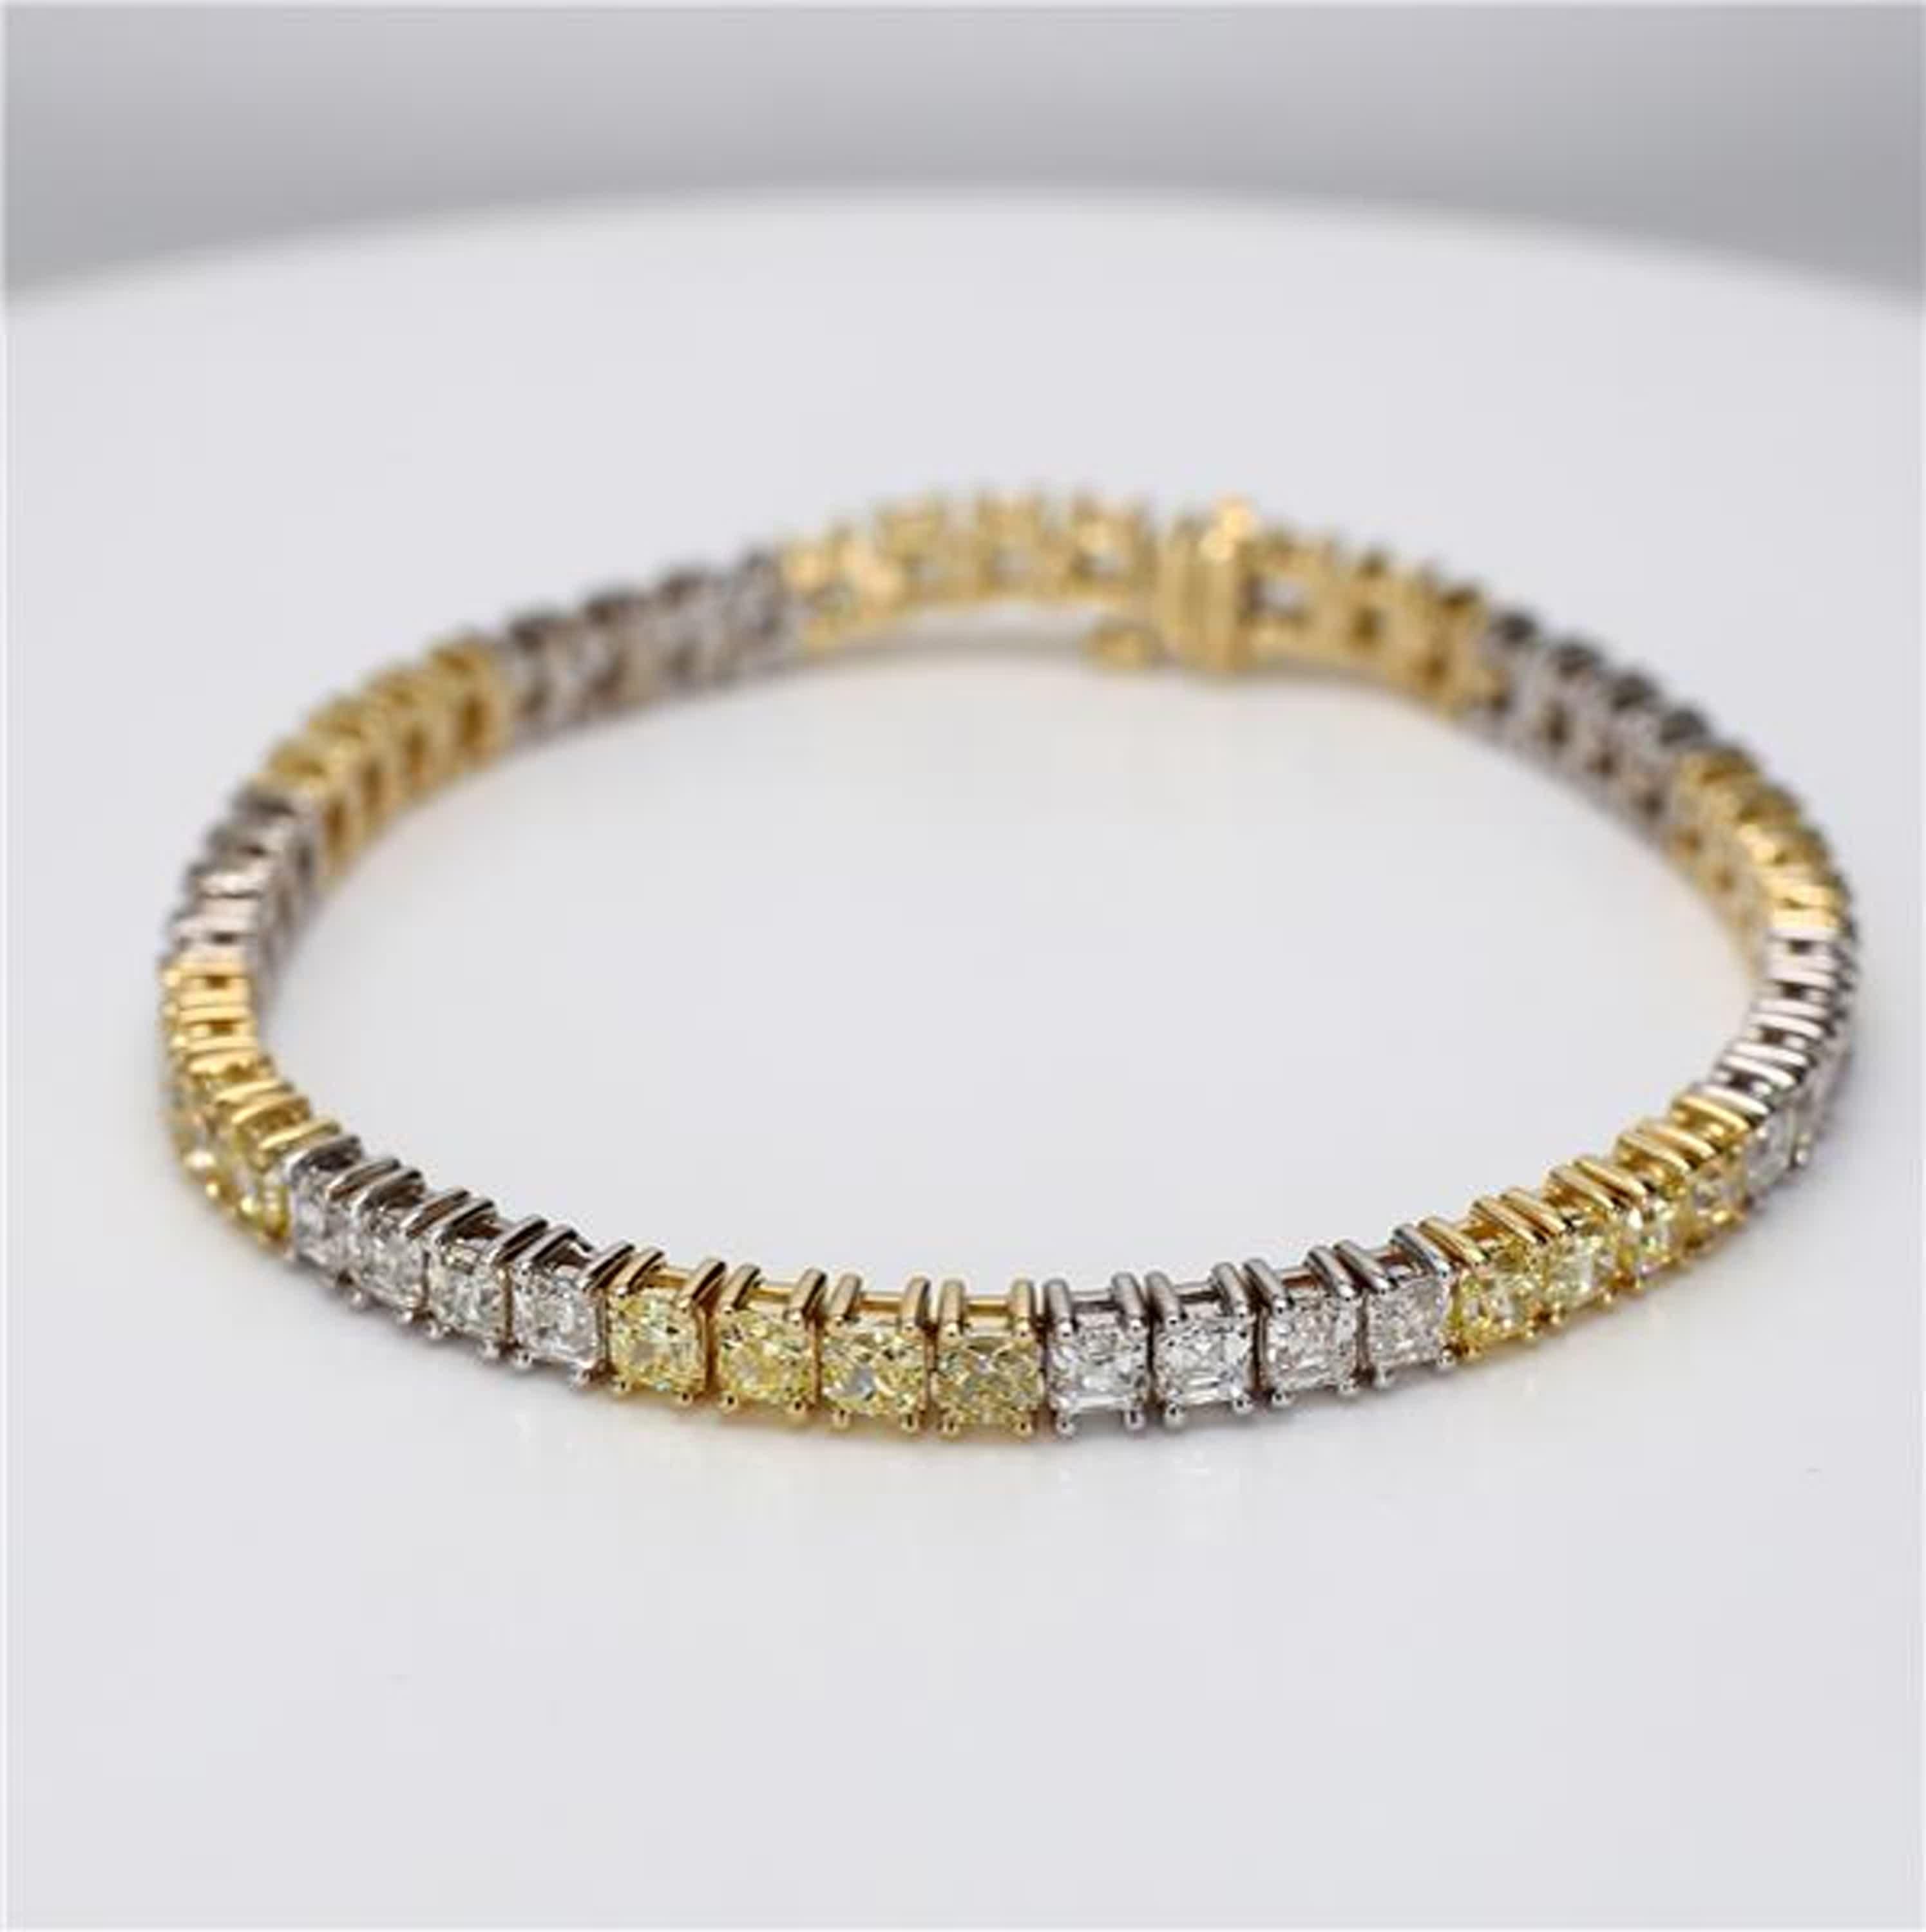 Le bracelet classique en diamants de Raregemworld. Monté dans une belle monture en or jaune et blanc 18 carats avec des diamants jaunes naturels de taille coussin. Les diamants jaunes sont complétés par des diamants blancs naturels de taille